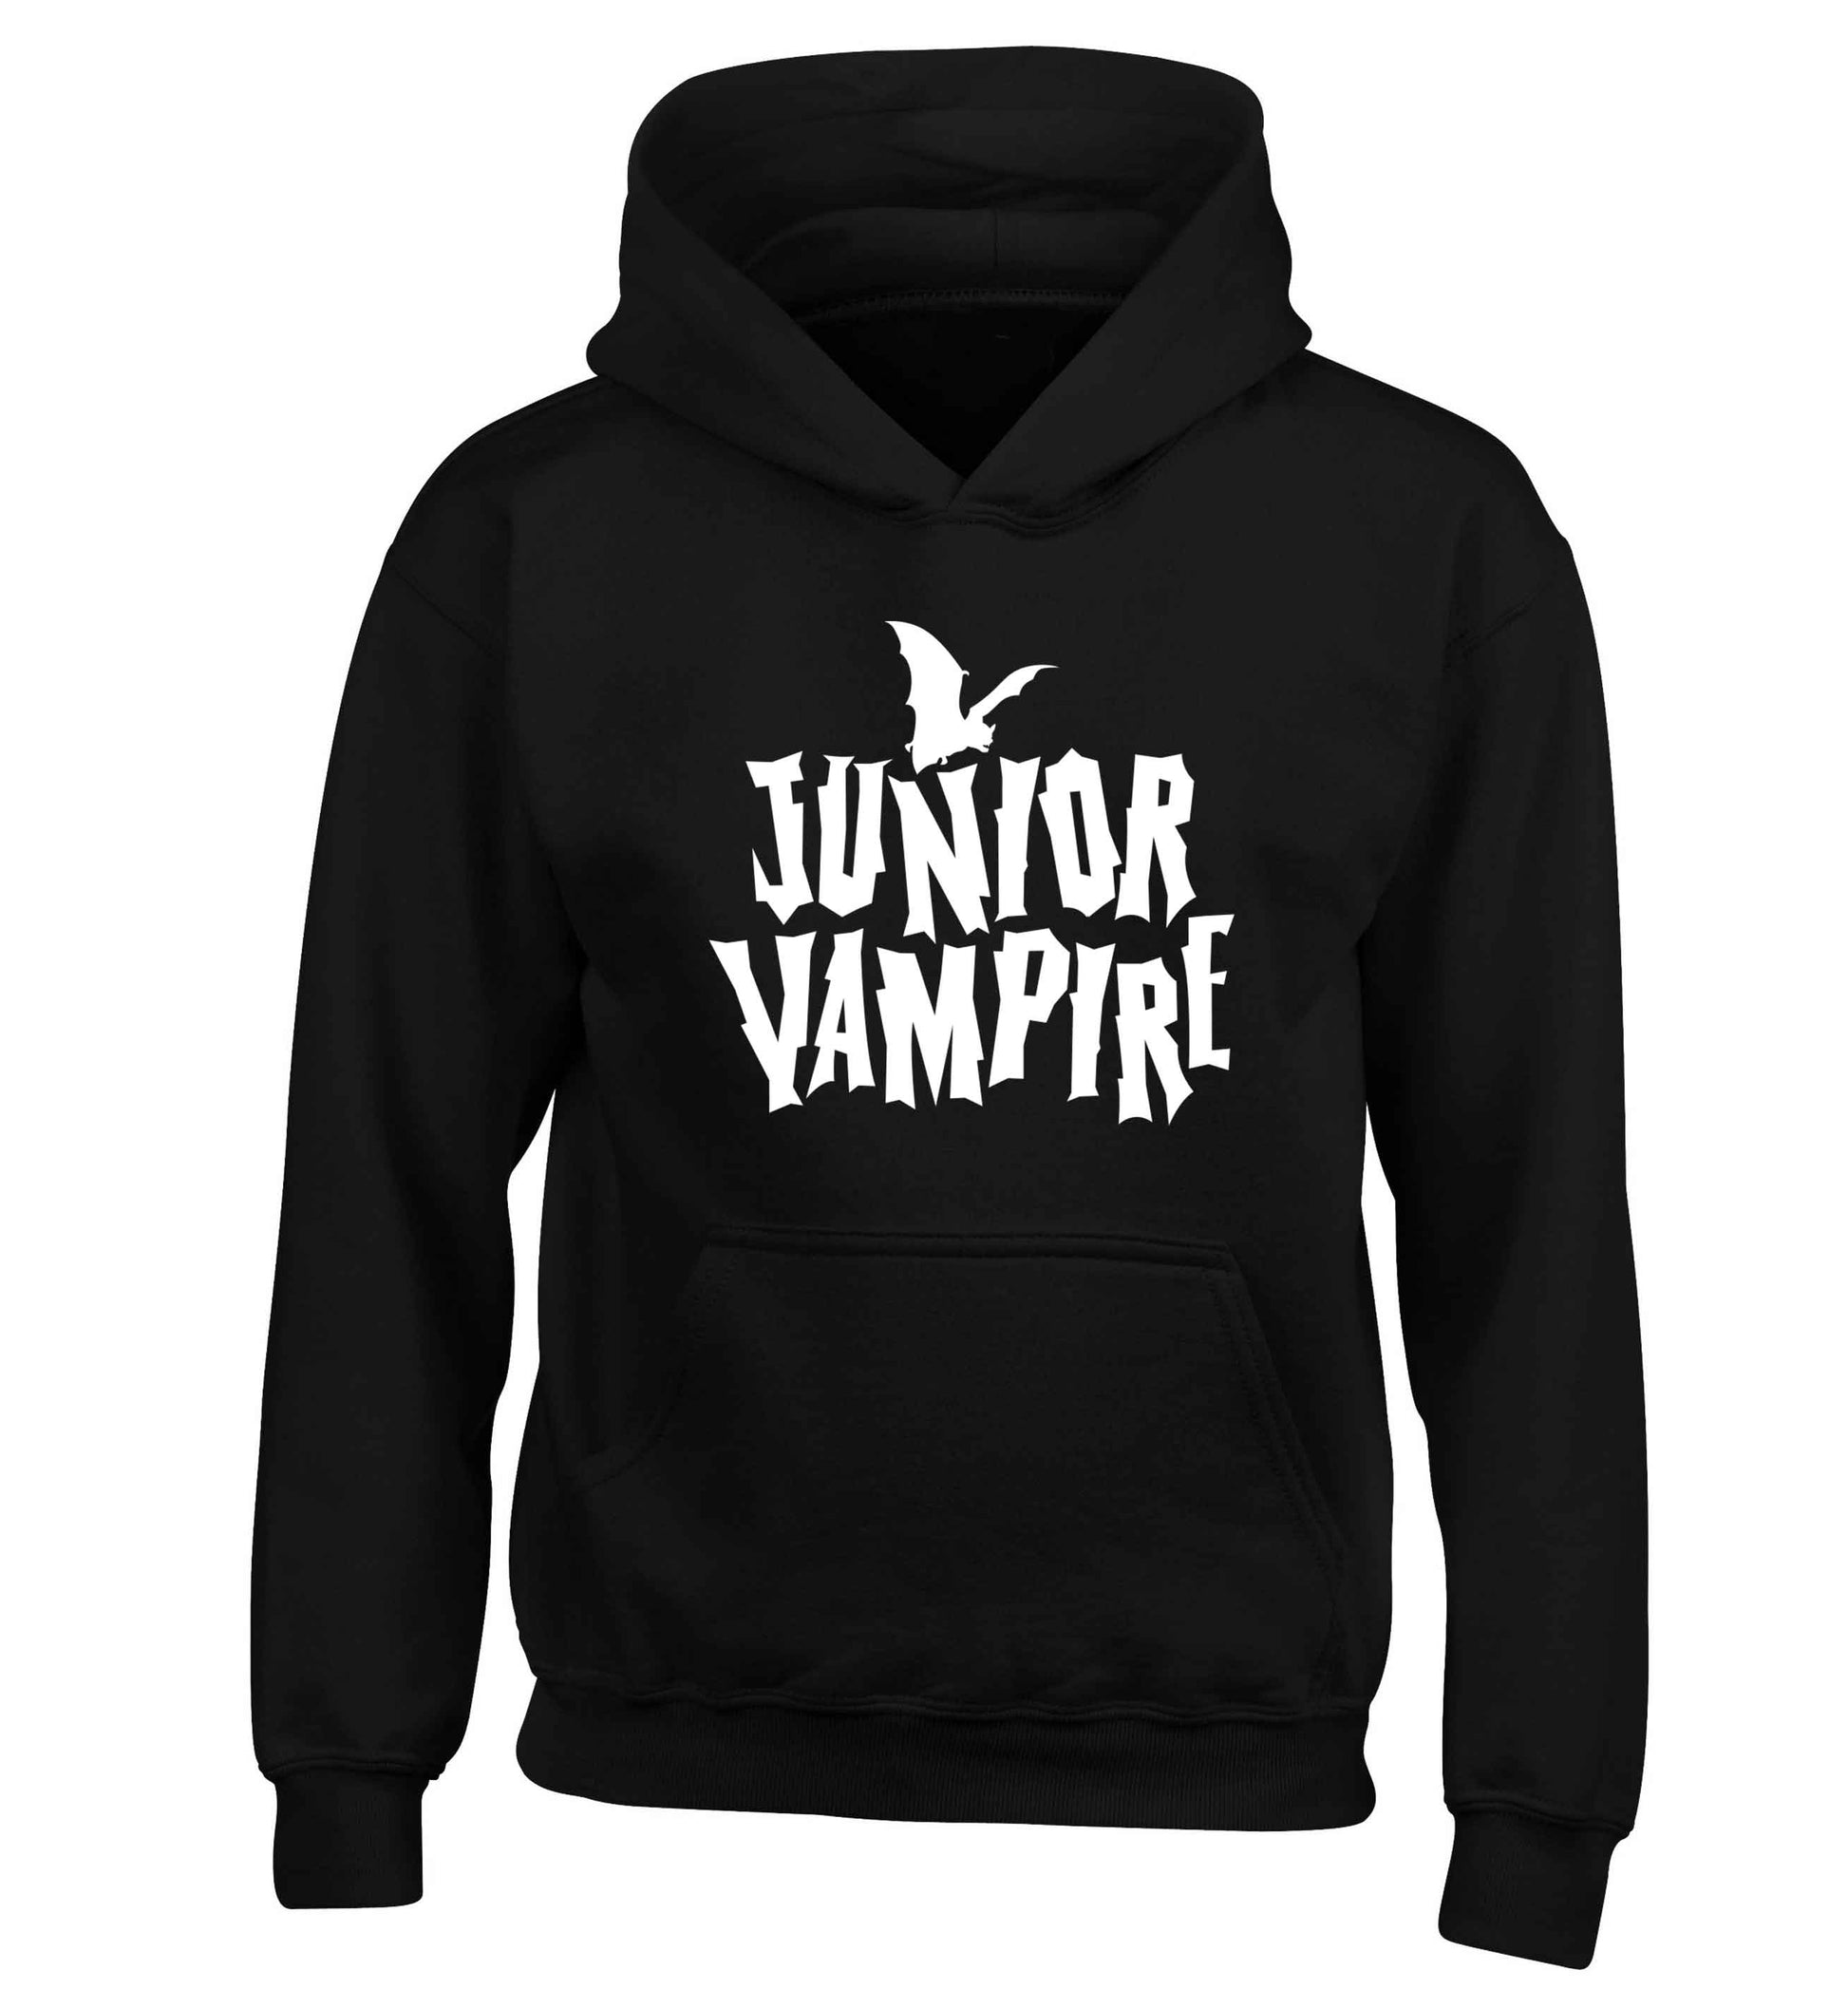 Junior vampire children's black hoodie 12-13 Years